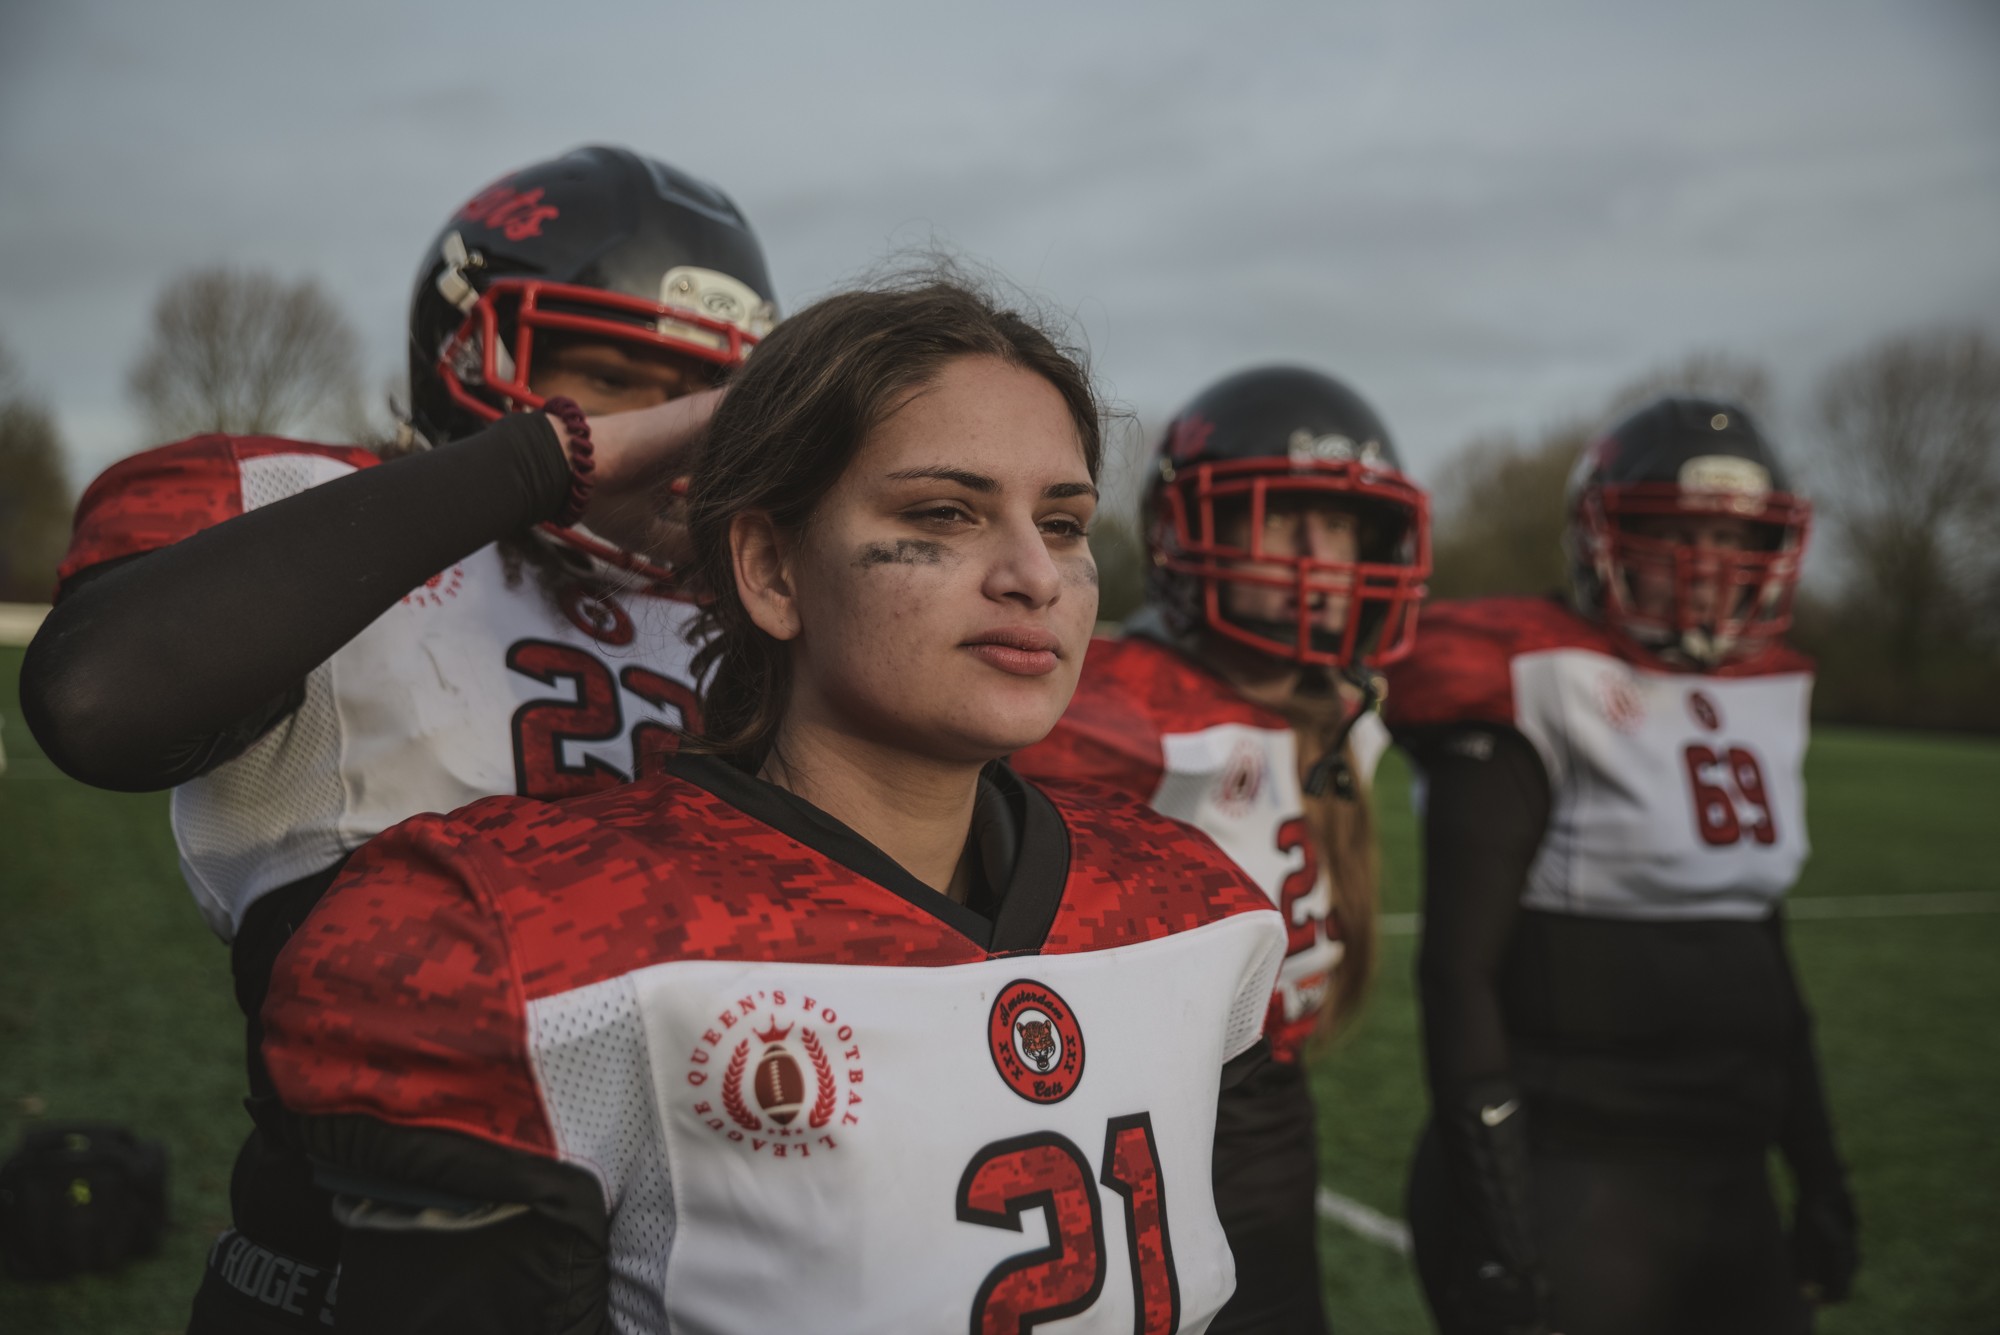 Brute foto's de American-footballwedstrijd tussen vrouwen in Nederland